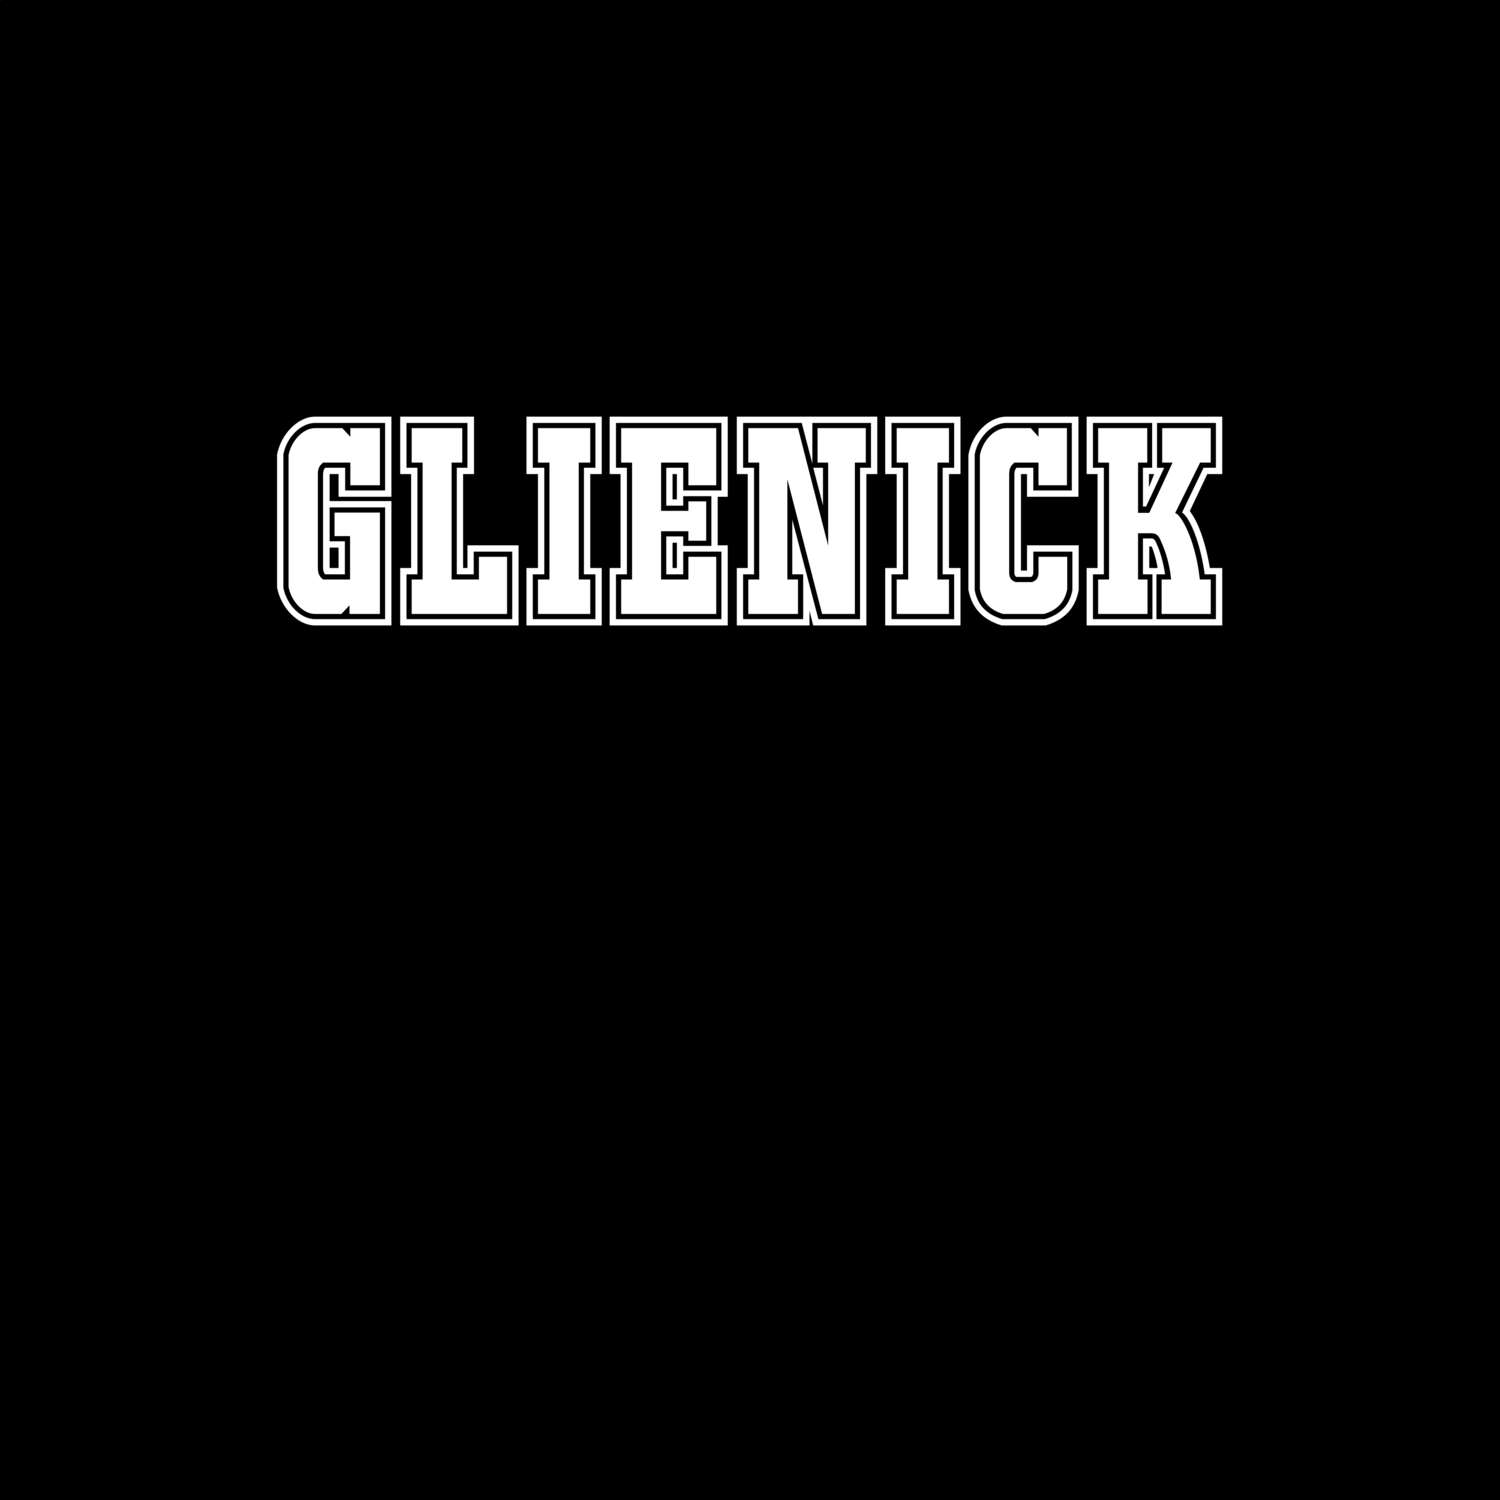 Glienick T-Shirt »Classic«